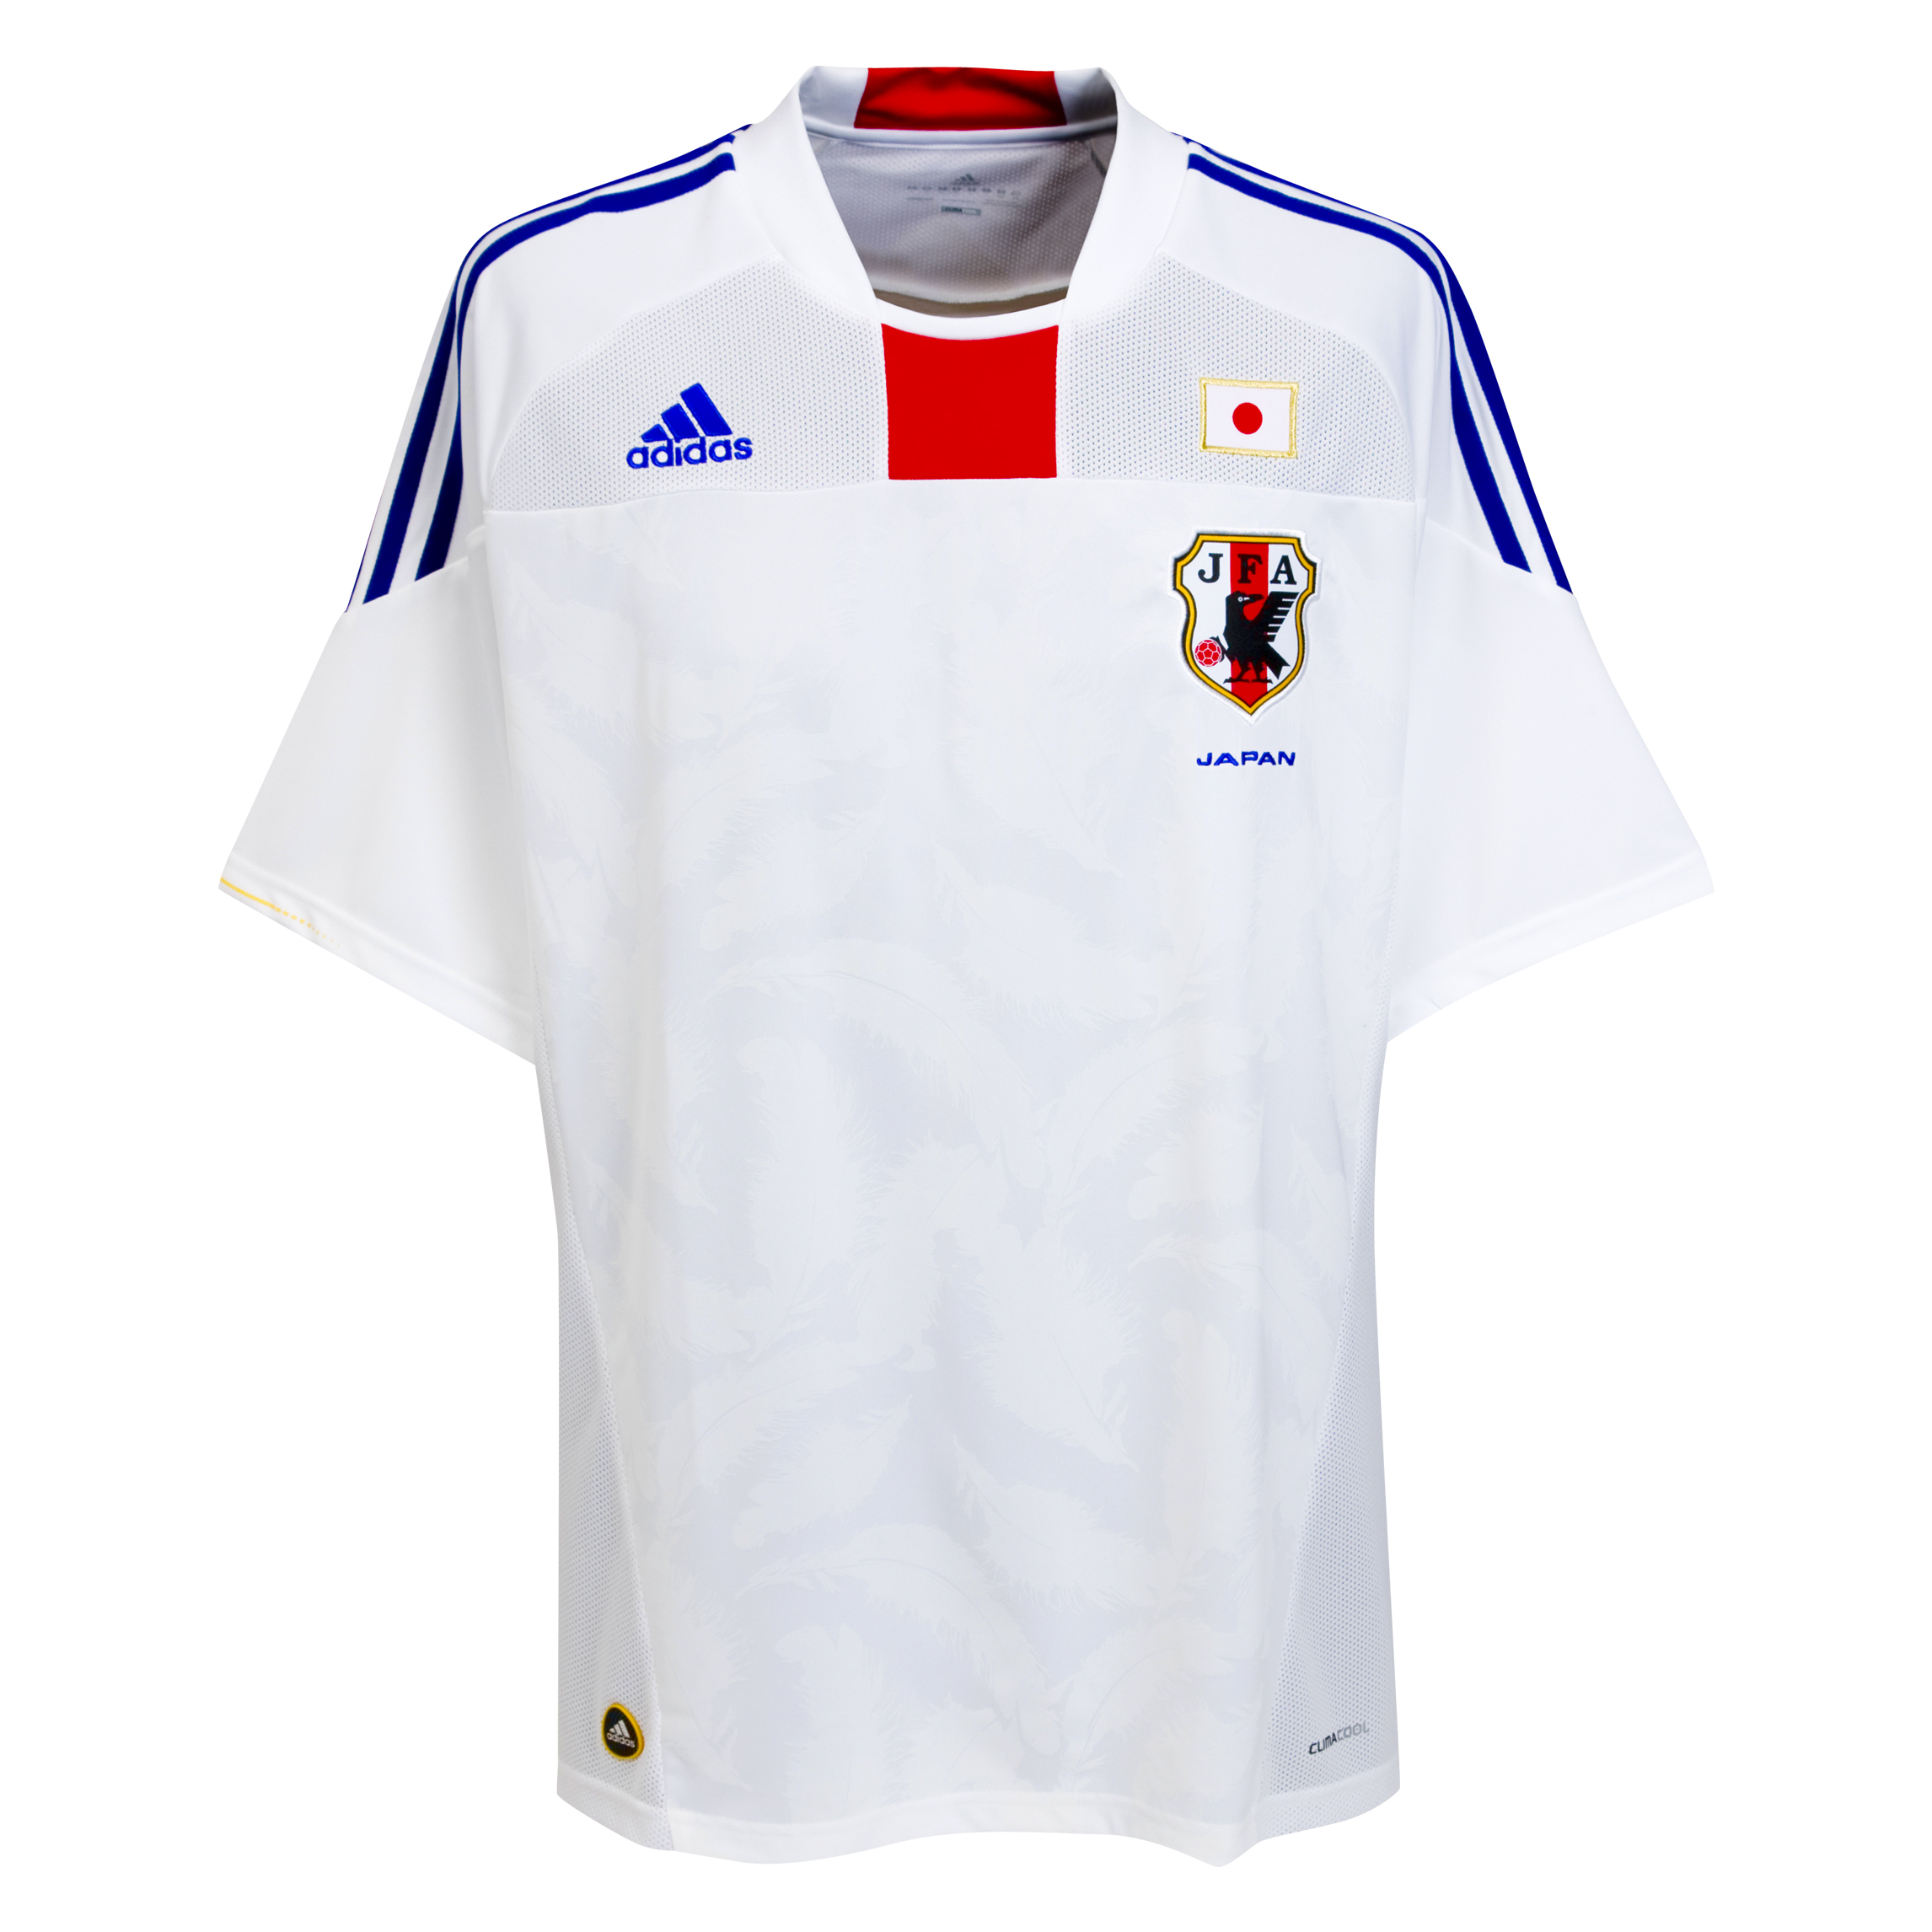 ملابس المنتخبات لكأس العالم2010م Kb-66941